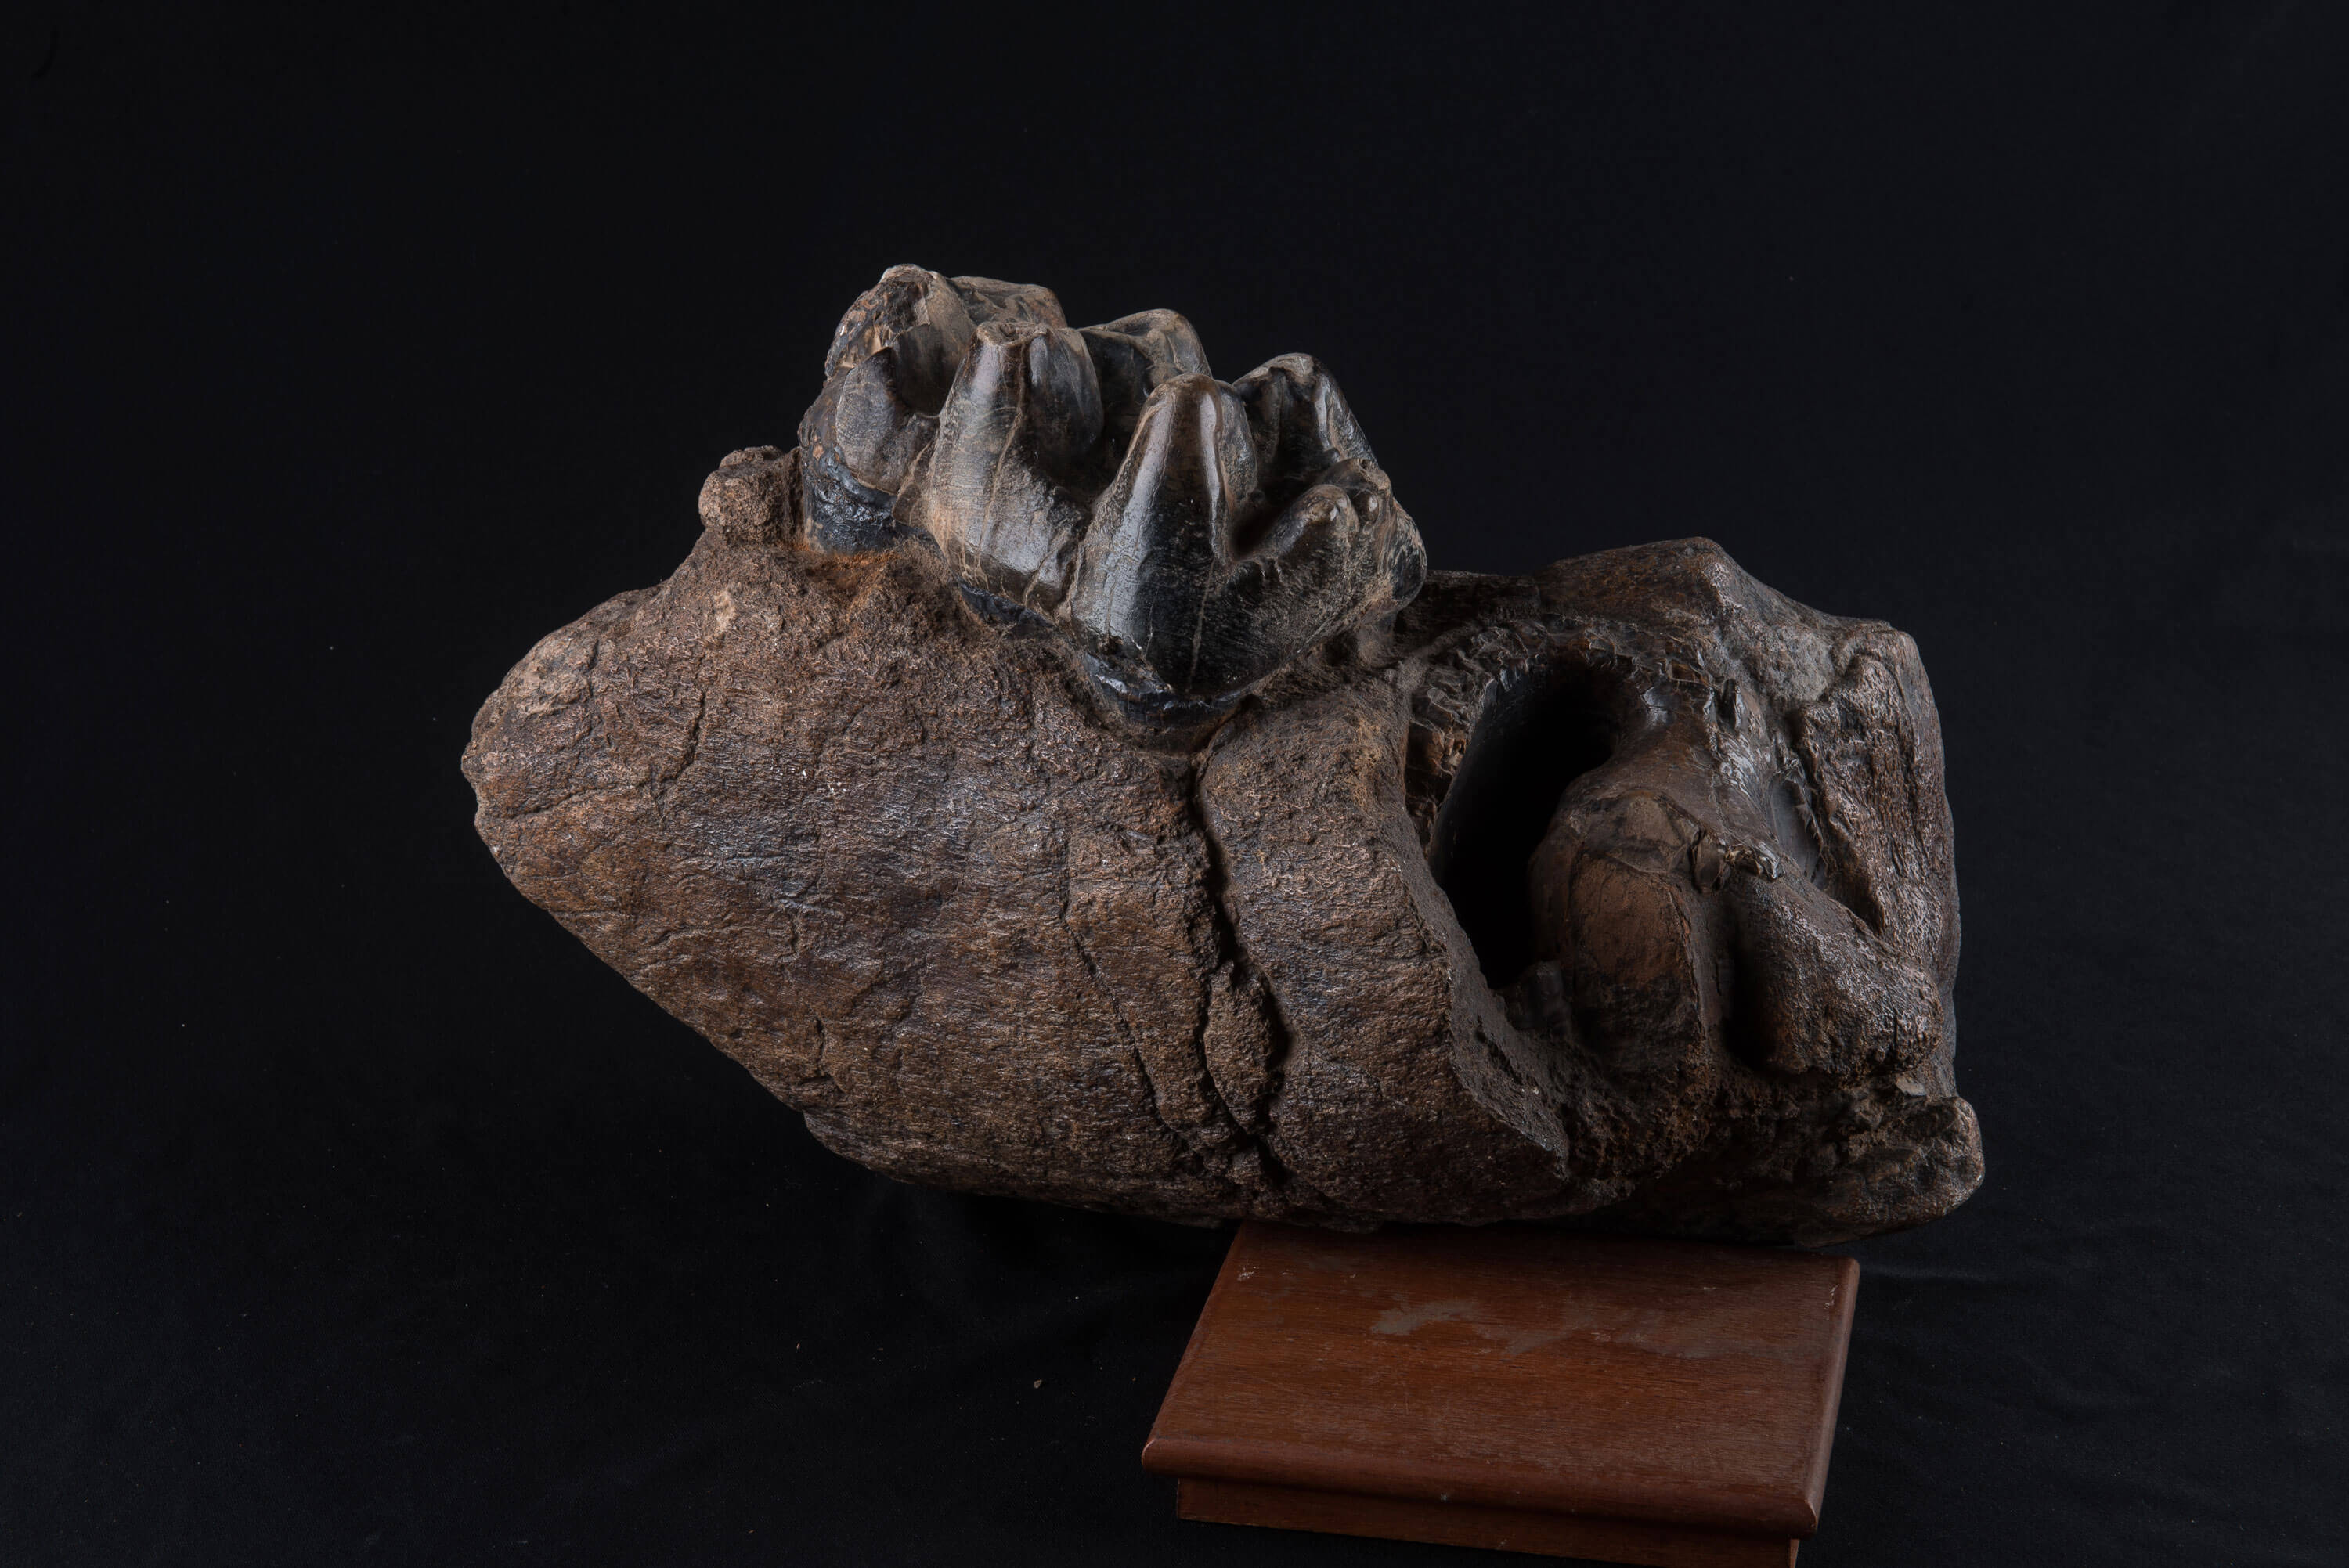 Dente de mastodonte, mamï¿½fero do Pleistoceno semelhante a um elefante